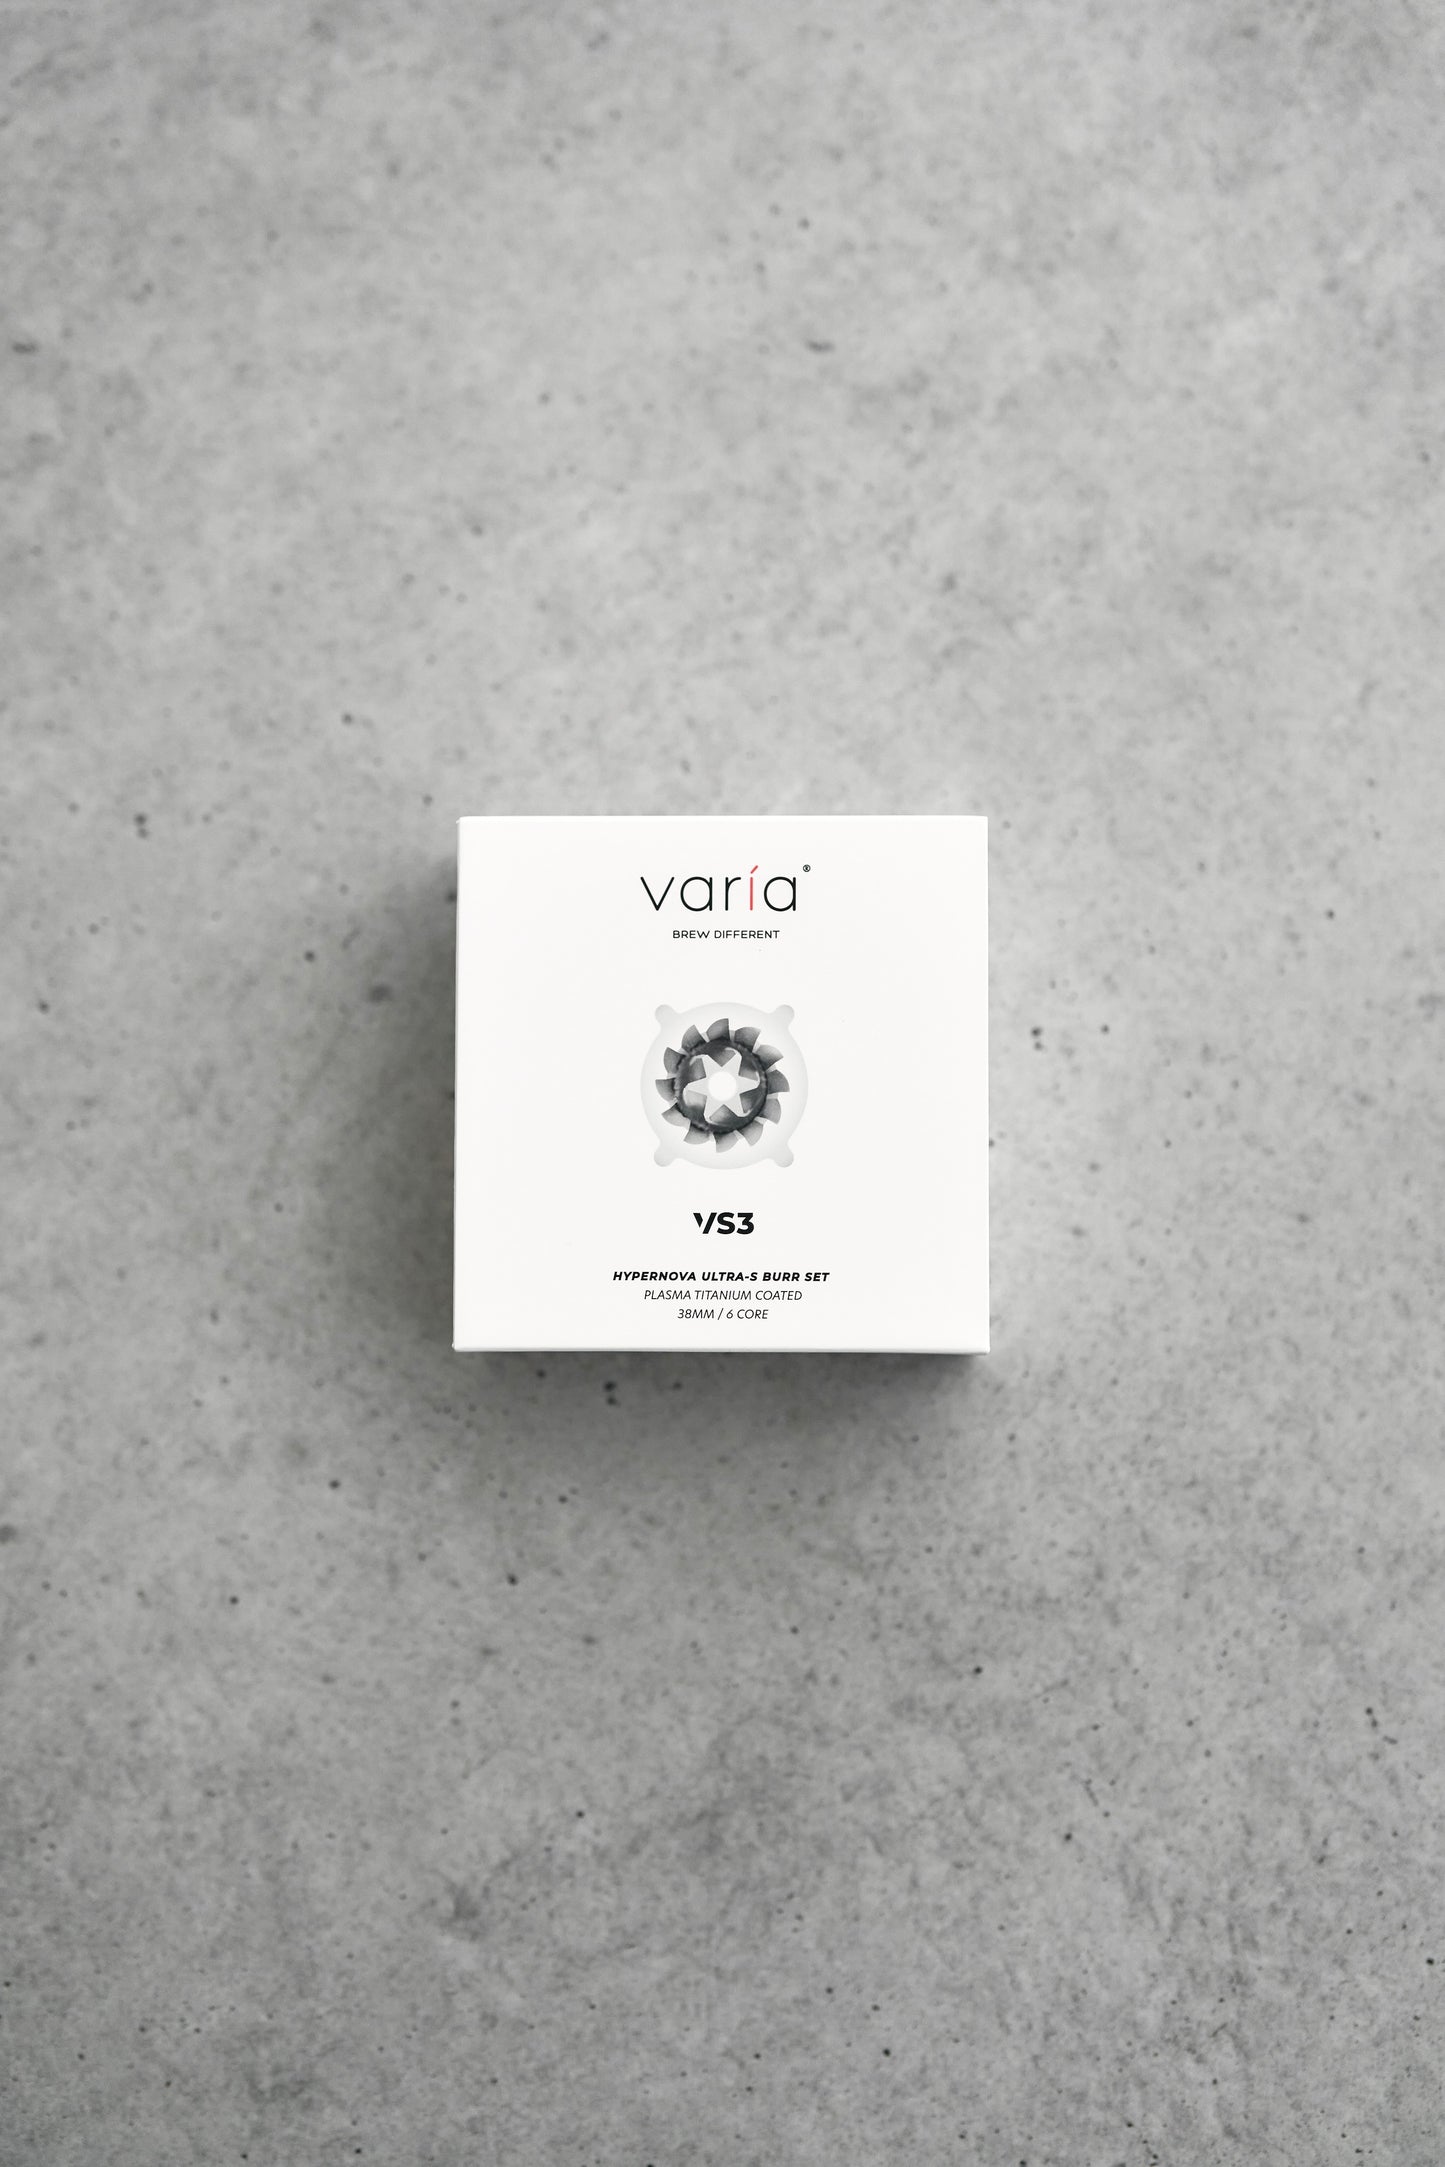 Varia / Hypernova Ultra Burr Set for VS3